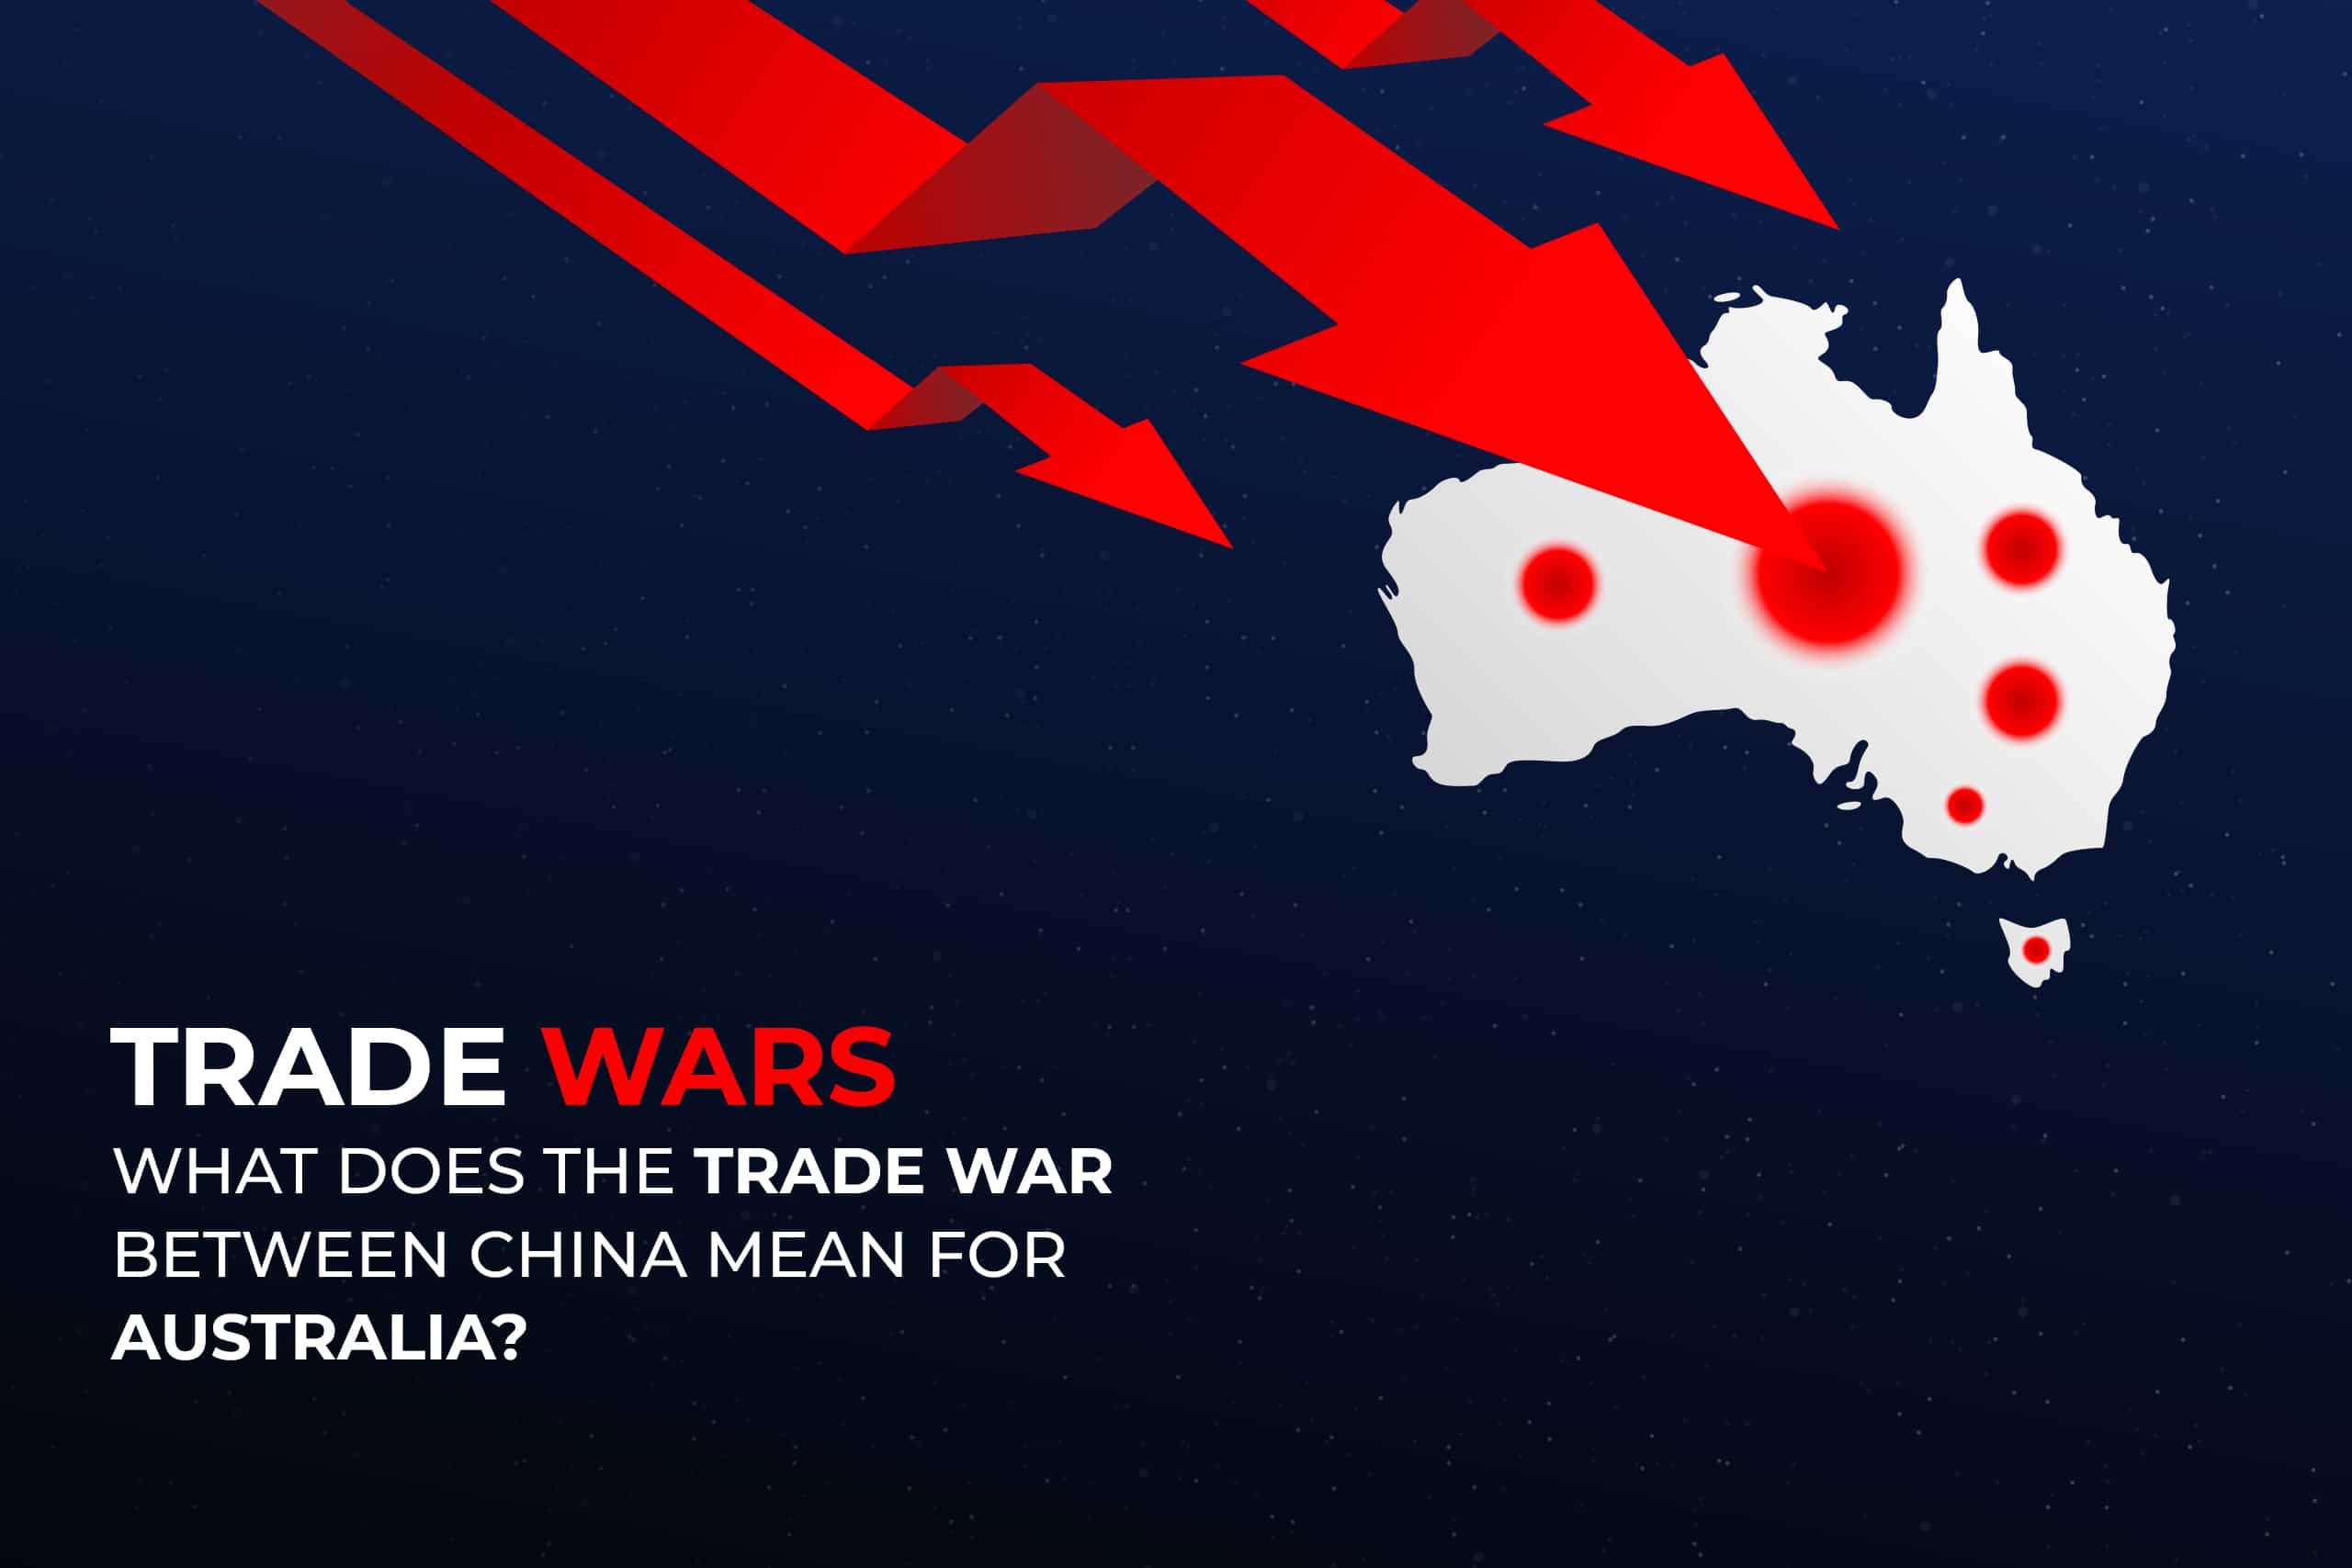 Trade wars between australia and china